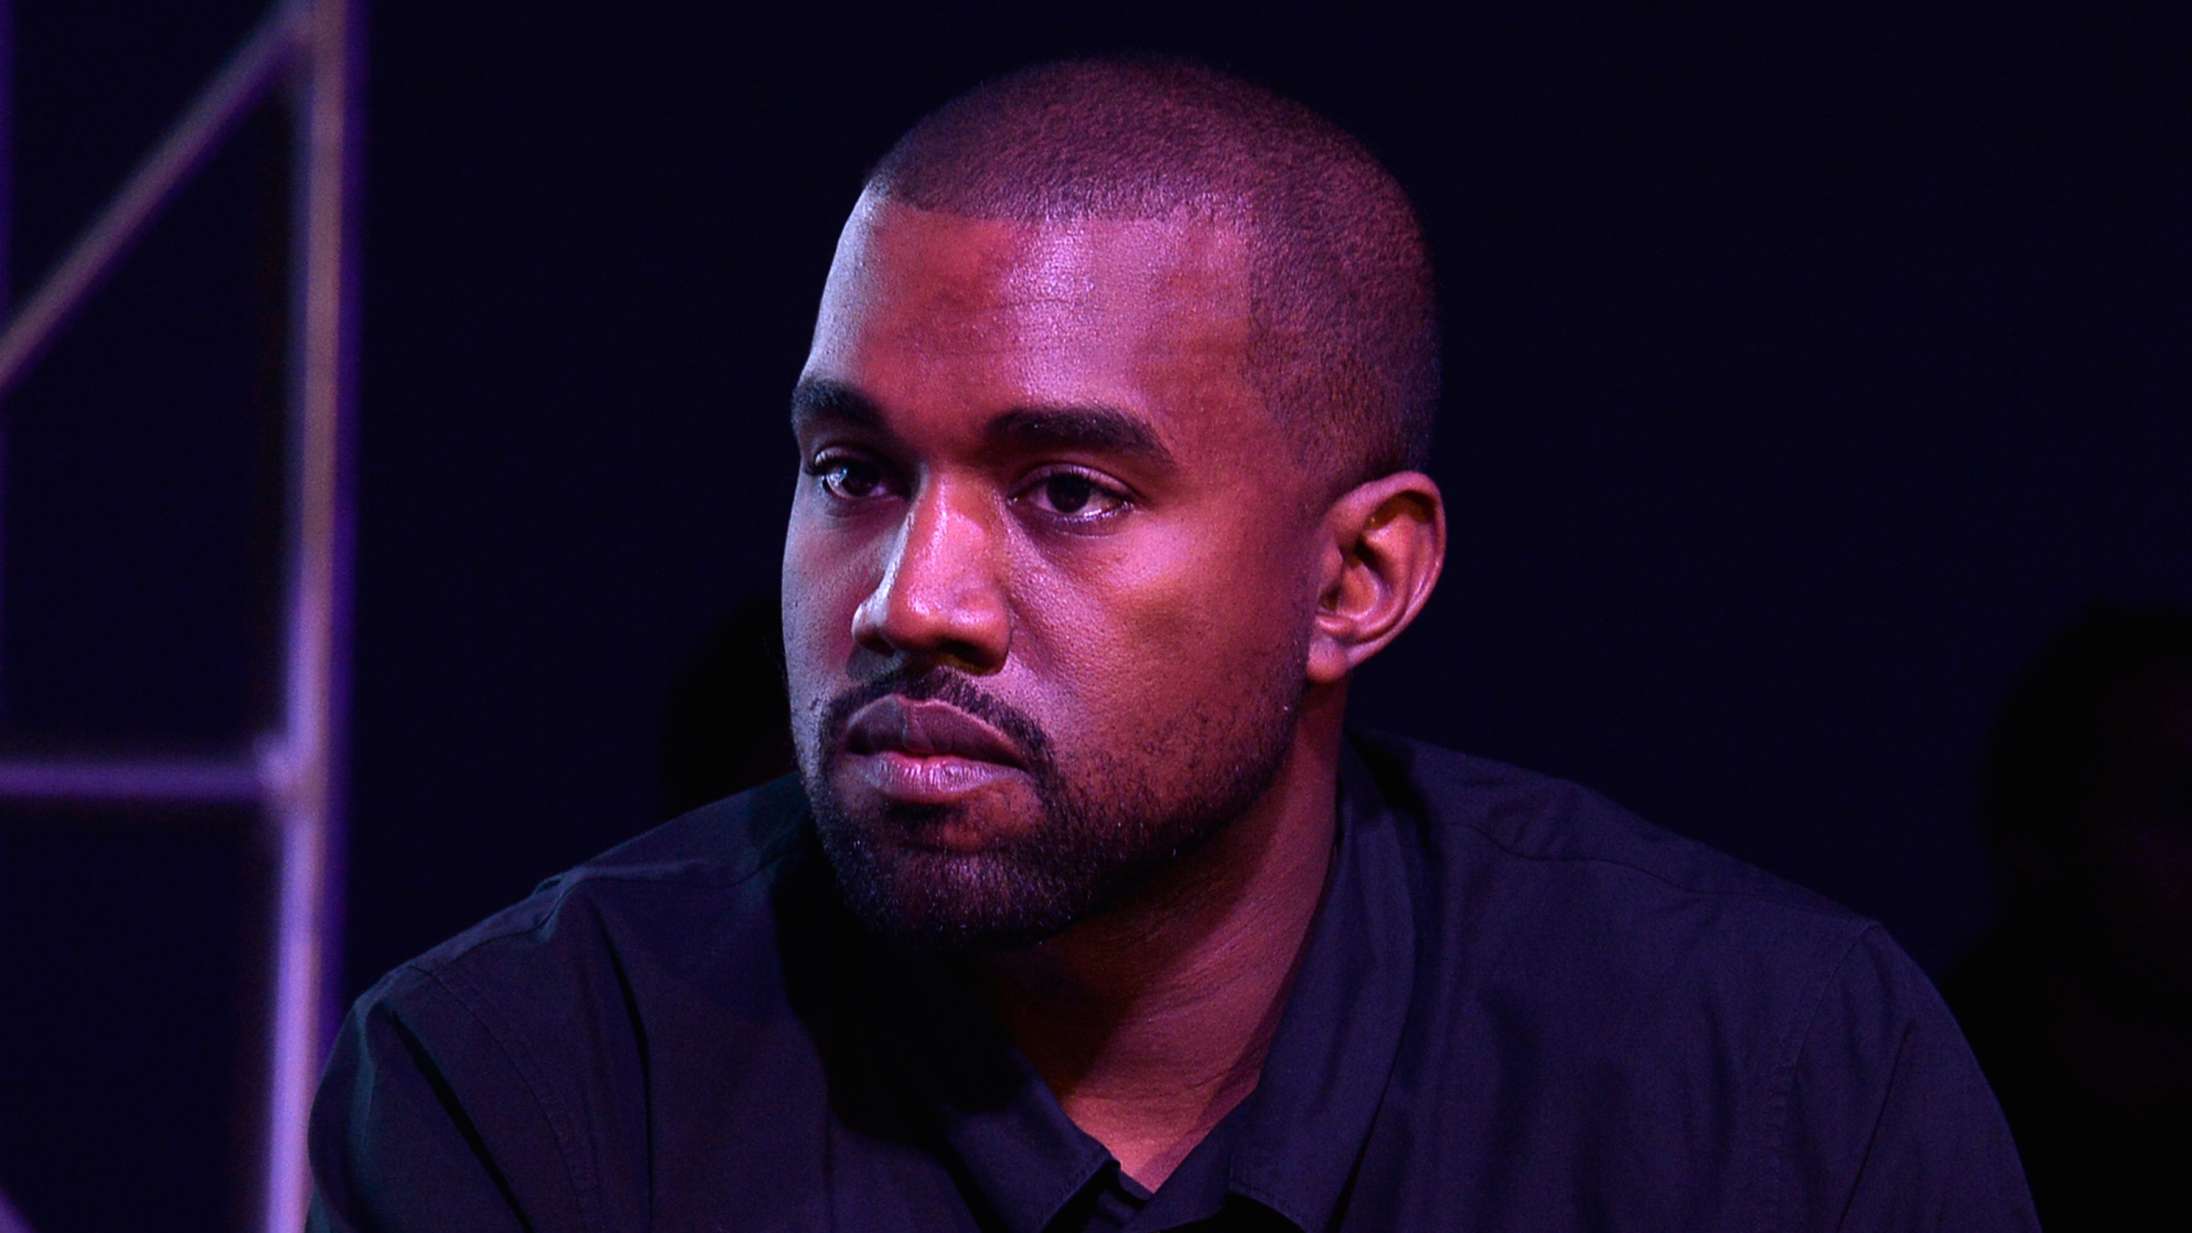 Nyt album og koncert i Italien: Gør Kanye West klar til det store comeback?